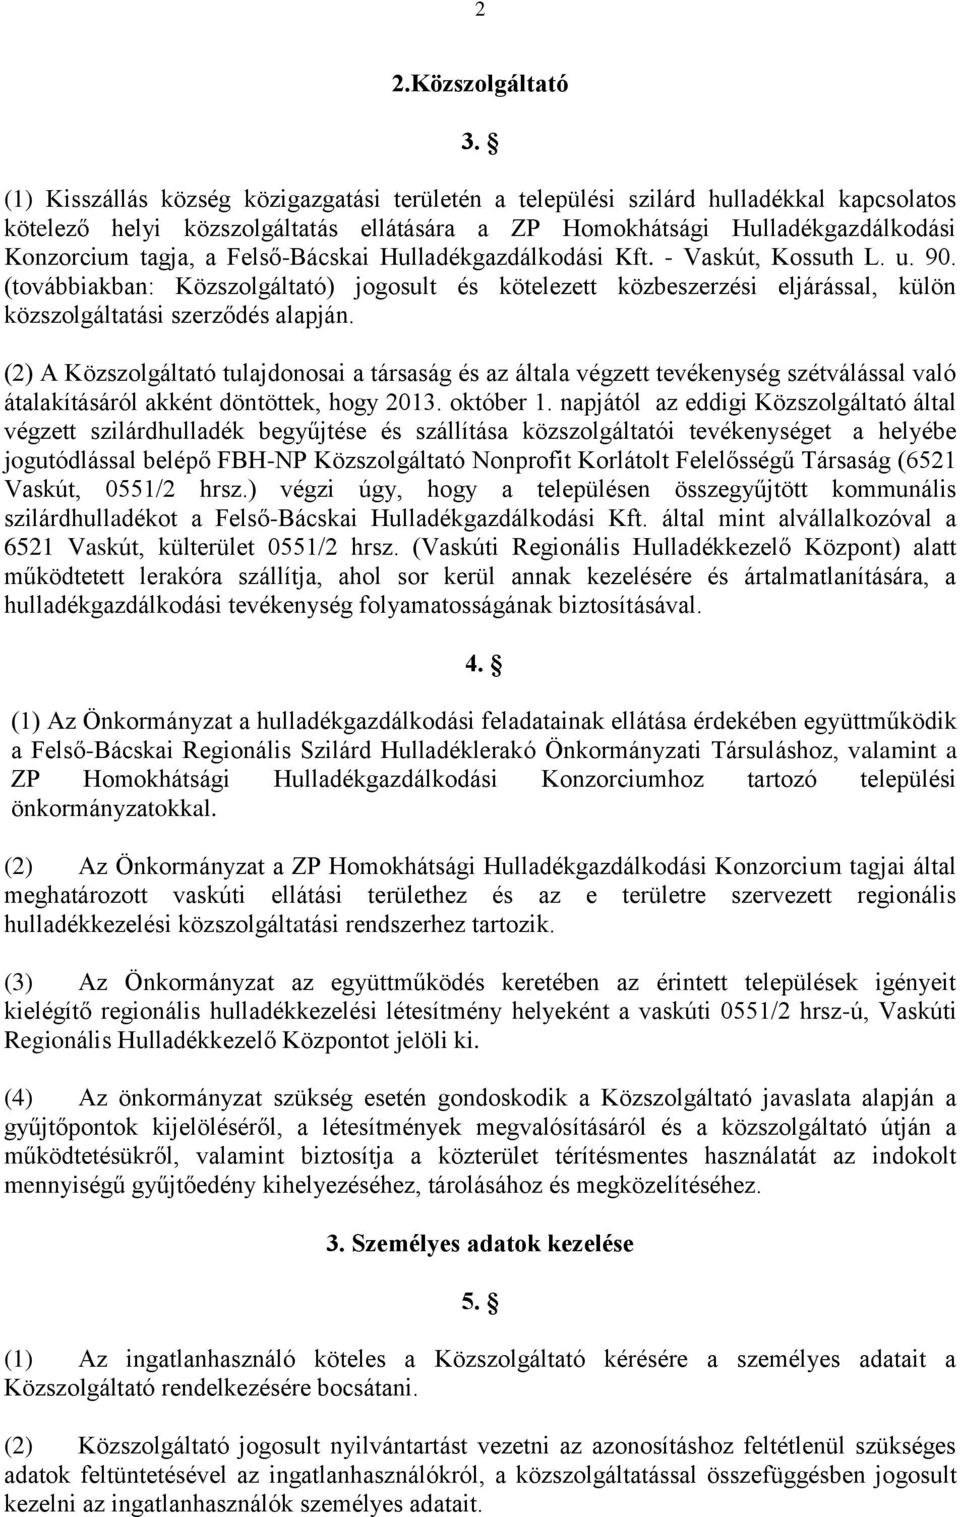 Felső-Bácskai Hulladékgazdálkodási Kft. - Vaskút, Kossuth L. u. 90. (továbbiakban: Közszolgáltató) jogosult és kötelezett közbeszerzési eljárással, külön közszolgáltatási szerződés alapján.